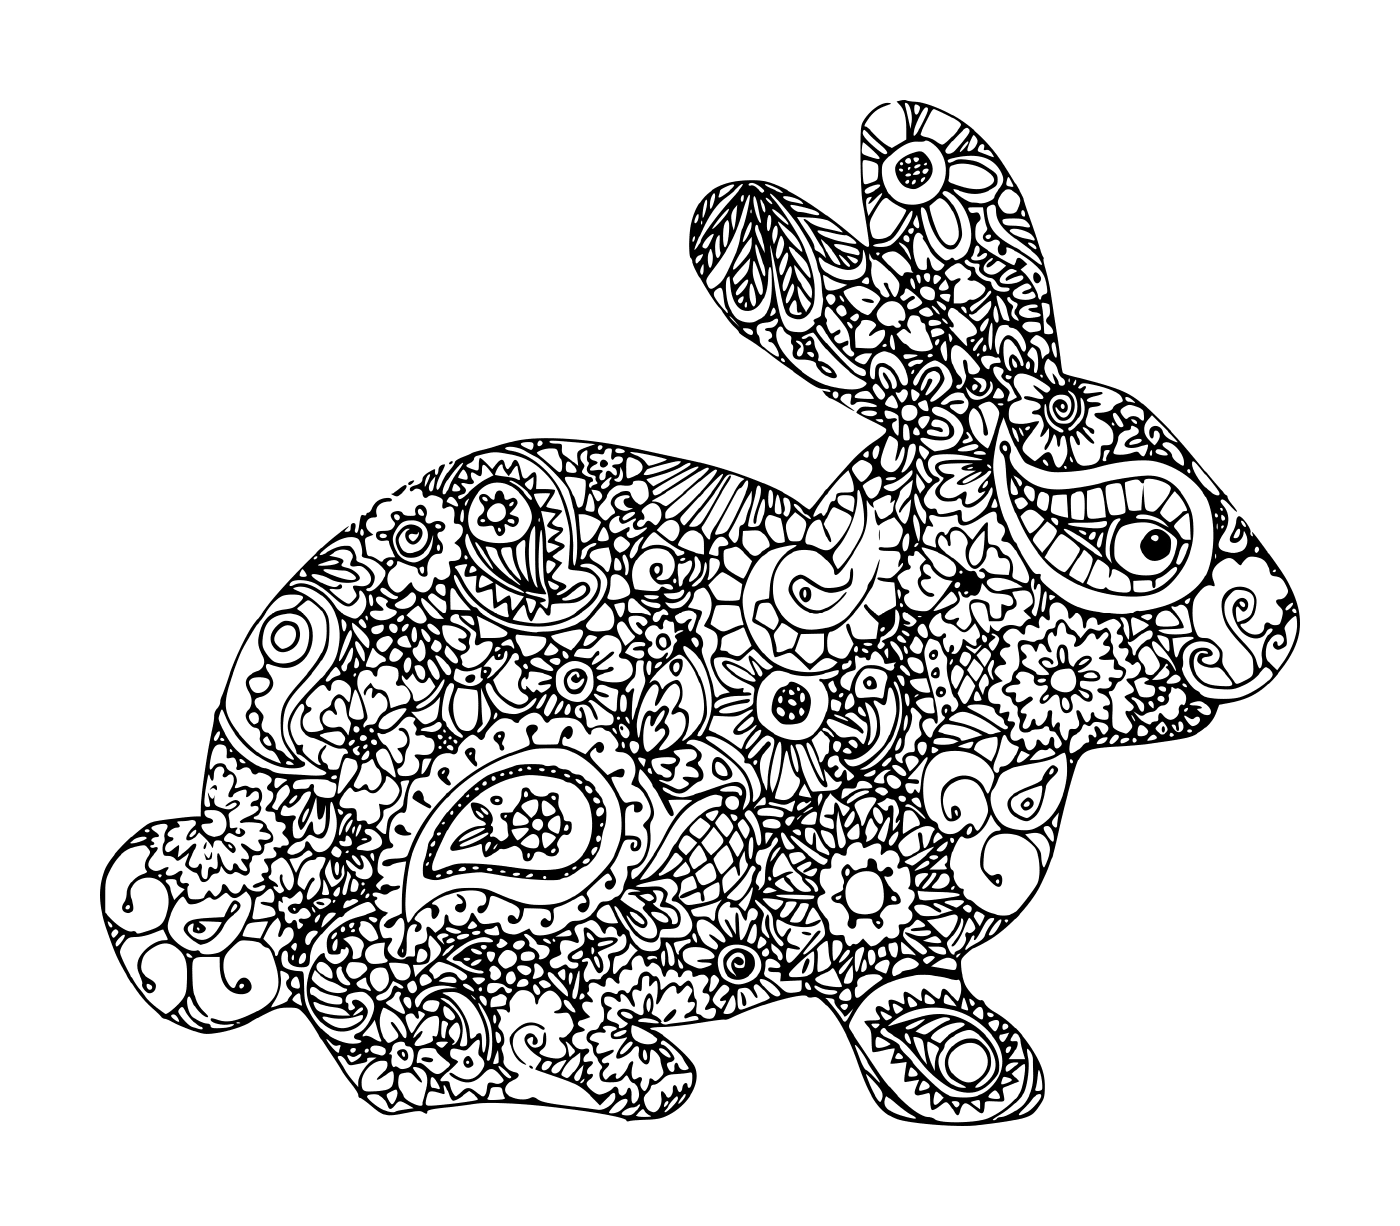  Rabbit mandala 